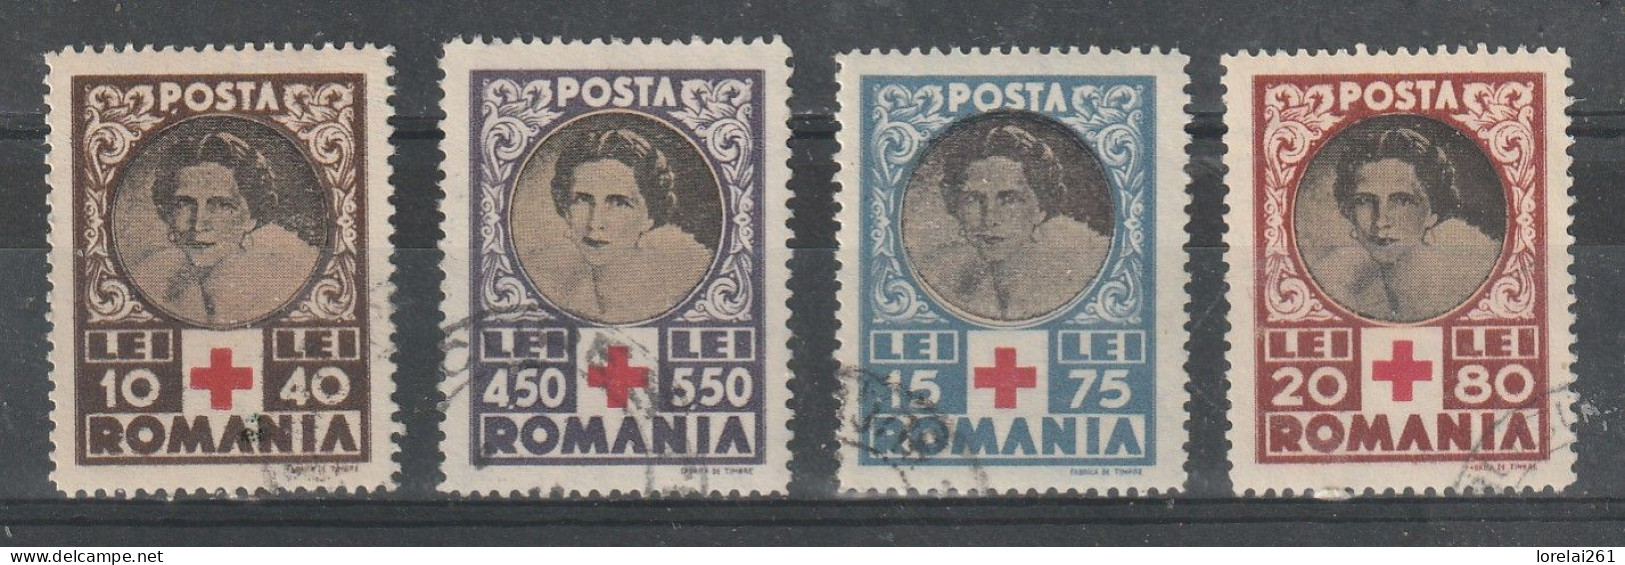 1945 - Croix Rouge/Reine Elena Mi No 827/830 - Gebraucht